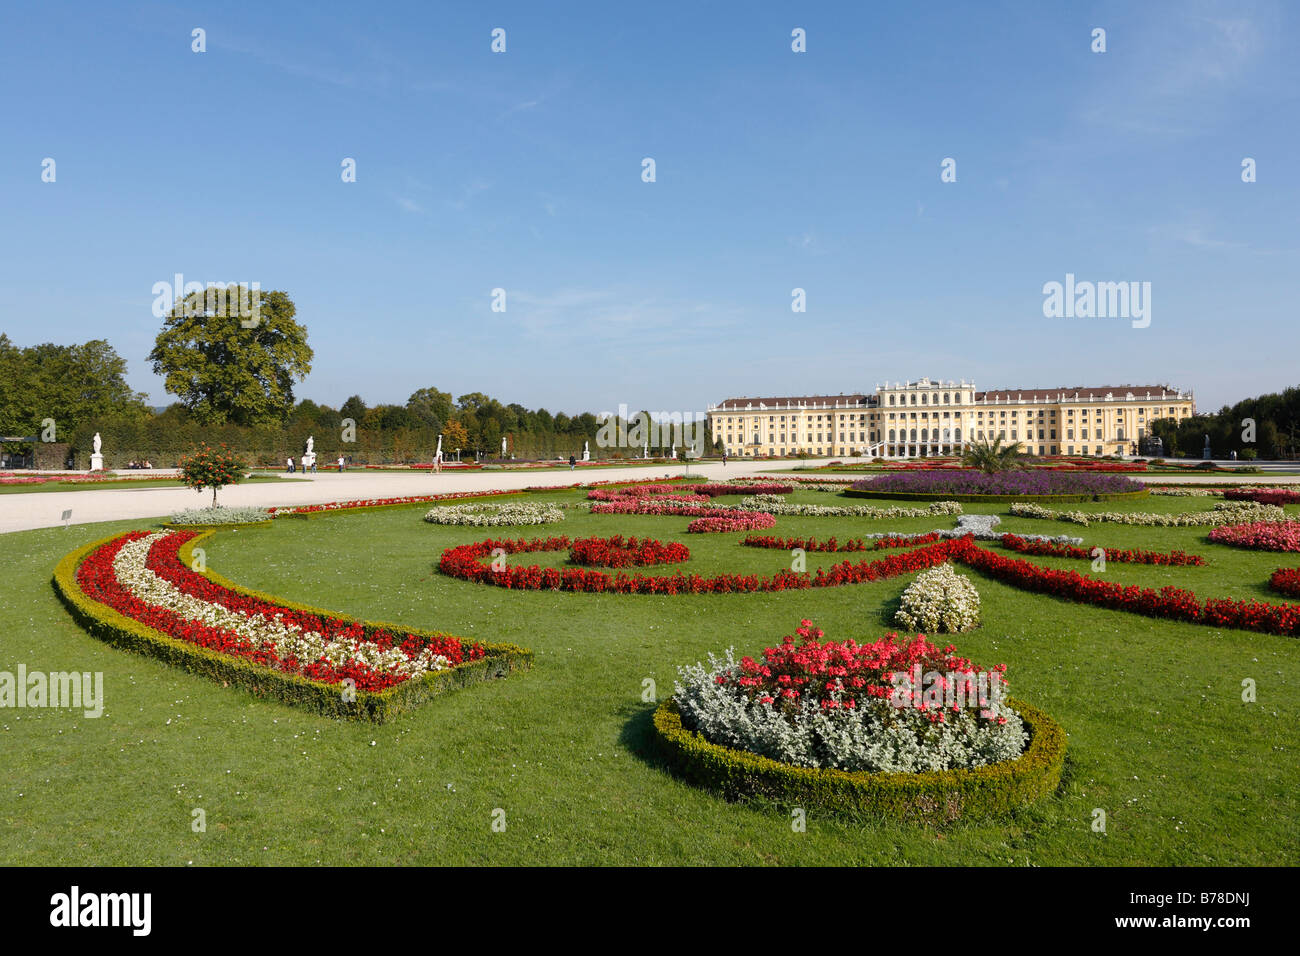 Schoenbrunn Palace, Schoenbrunn Palace Park, Vienna, Austria, Europe Stock Photo